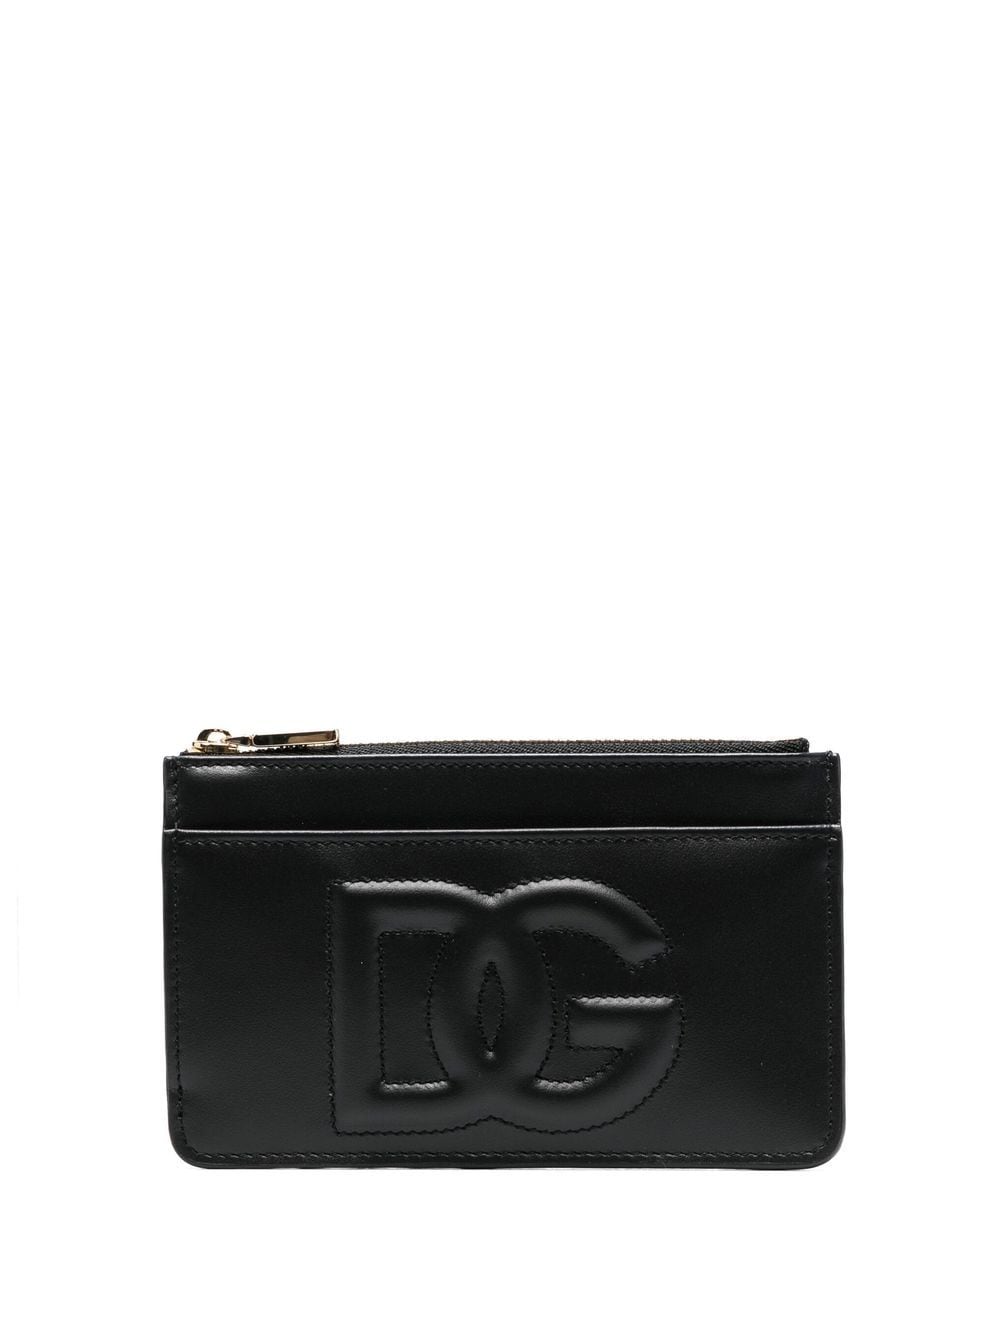 Dolce & Gabbana DG logo zip purse - Black von Dolce & Gabbana